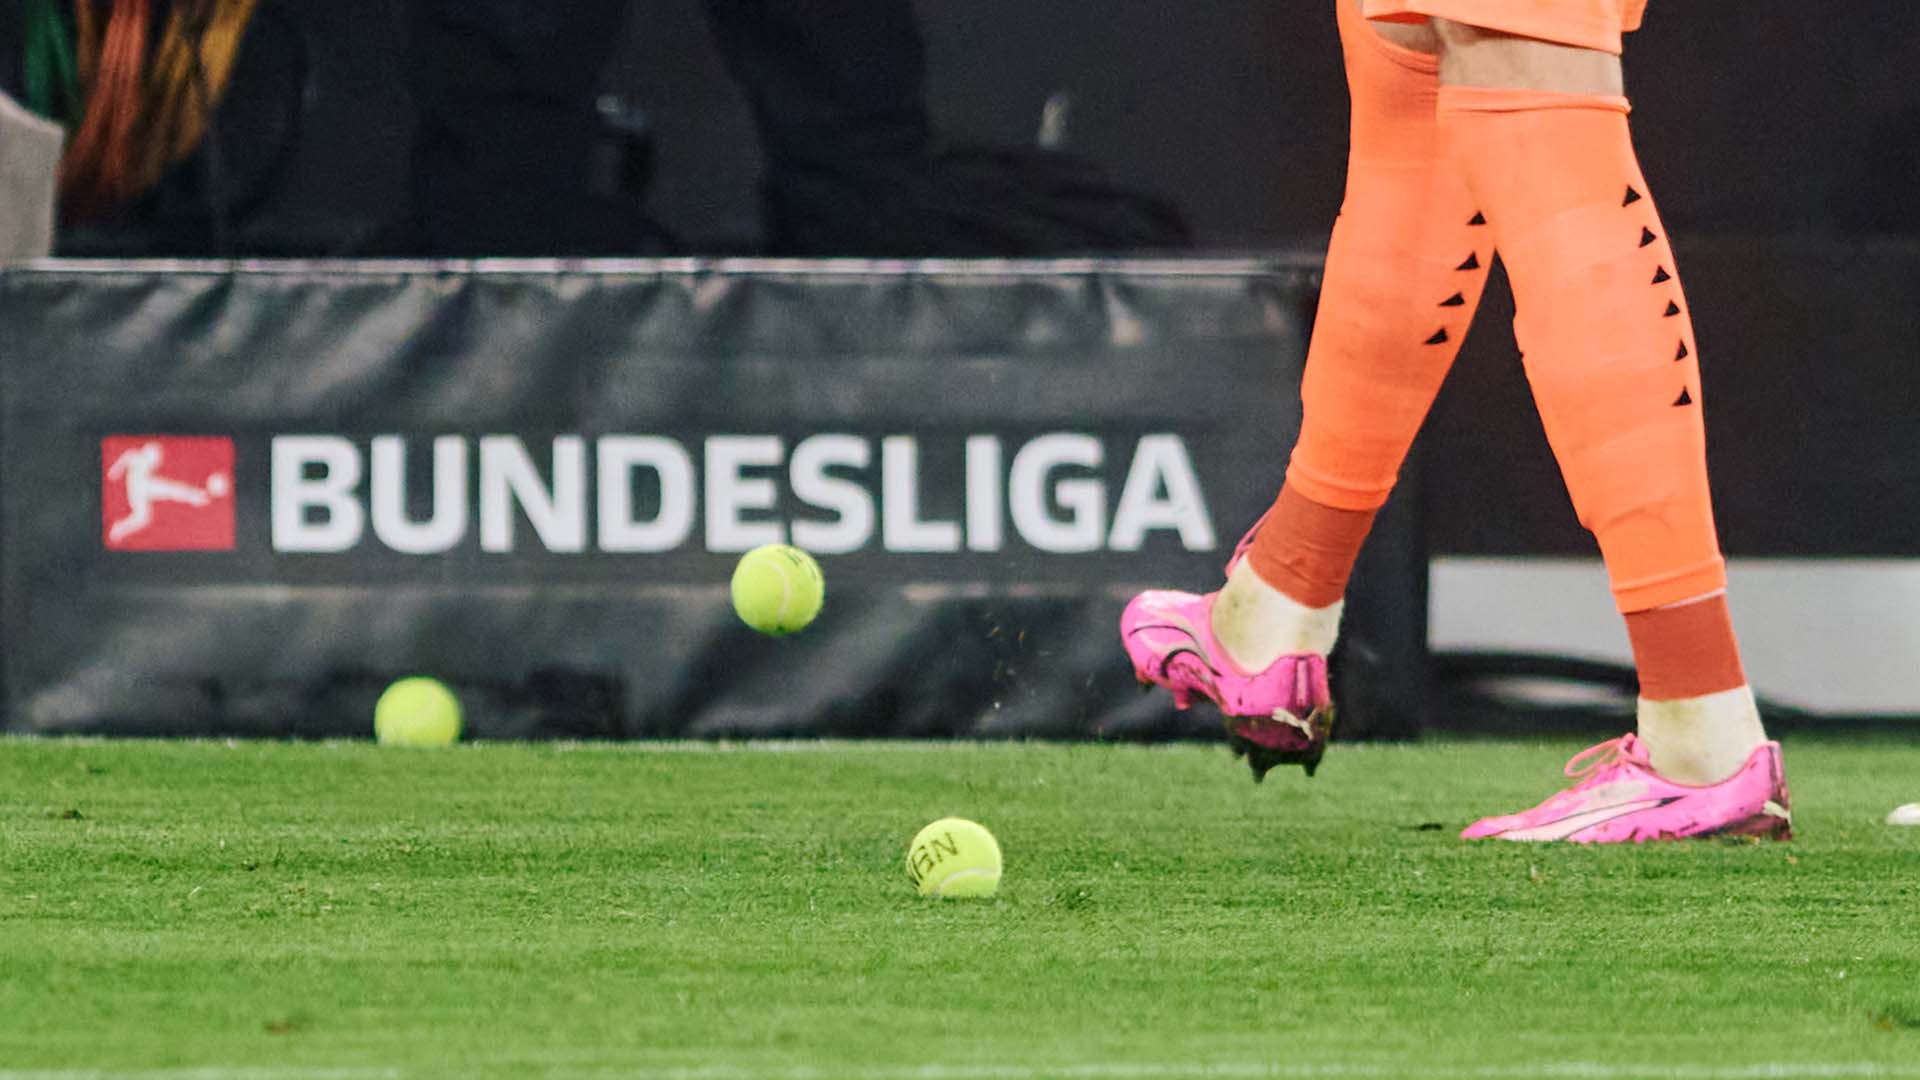 Oposición a la comercialización del fútbol: La Bundesliga, donde el modelo 50 + 1 sigue en vigor para evitar que los clubes caigan en manos pudientes ajenas, sigue abogando por un fútbol por y para el aficionado.